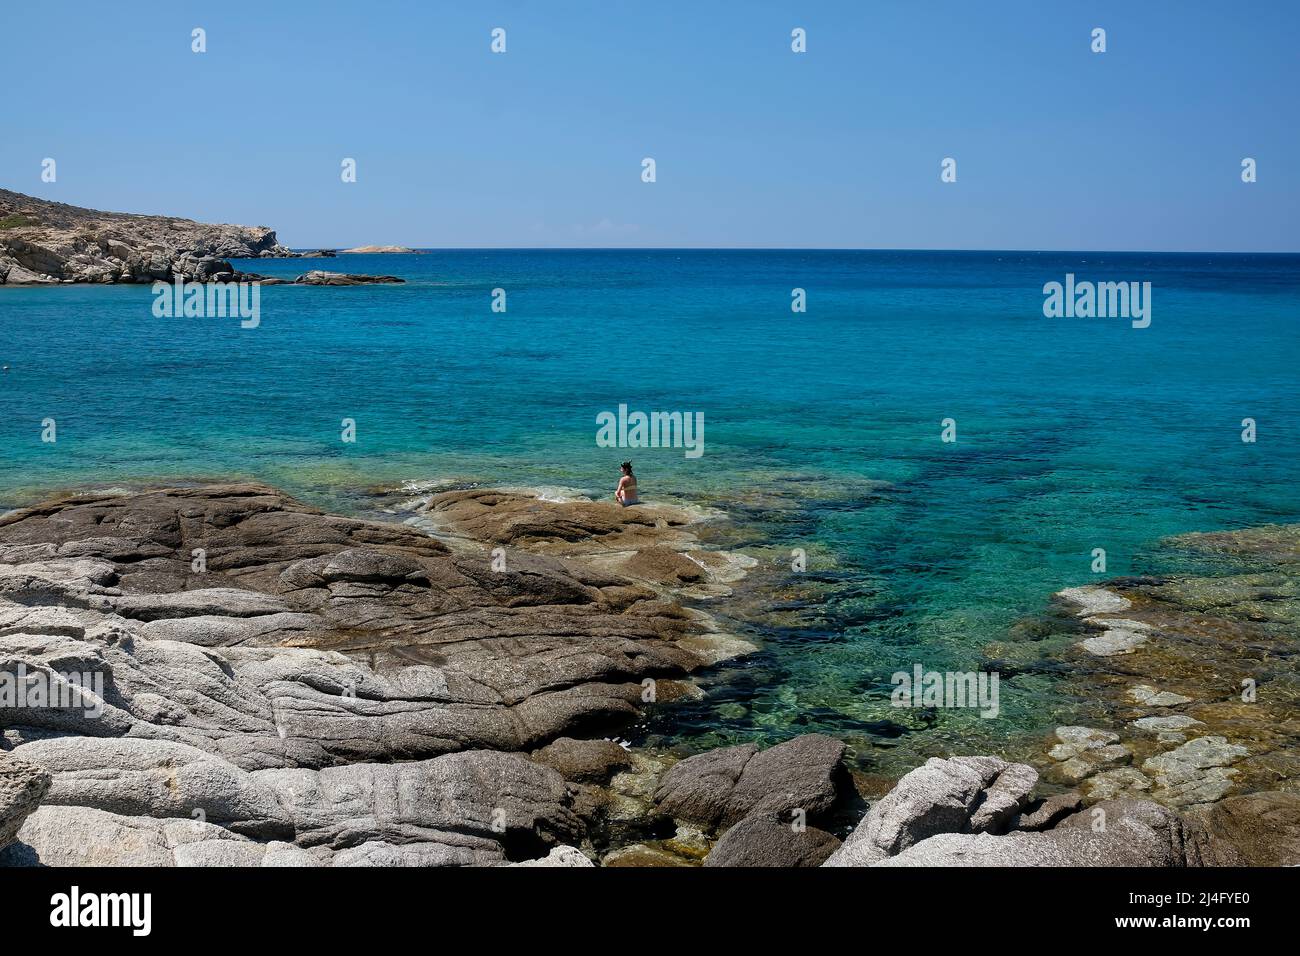 IOS, Grecia - 12 de junio de 2021 : Una mujer soltera tomando el sol en la increíble playa rocosa de Pikri Nero en Ios Grecia Foto de stock